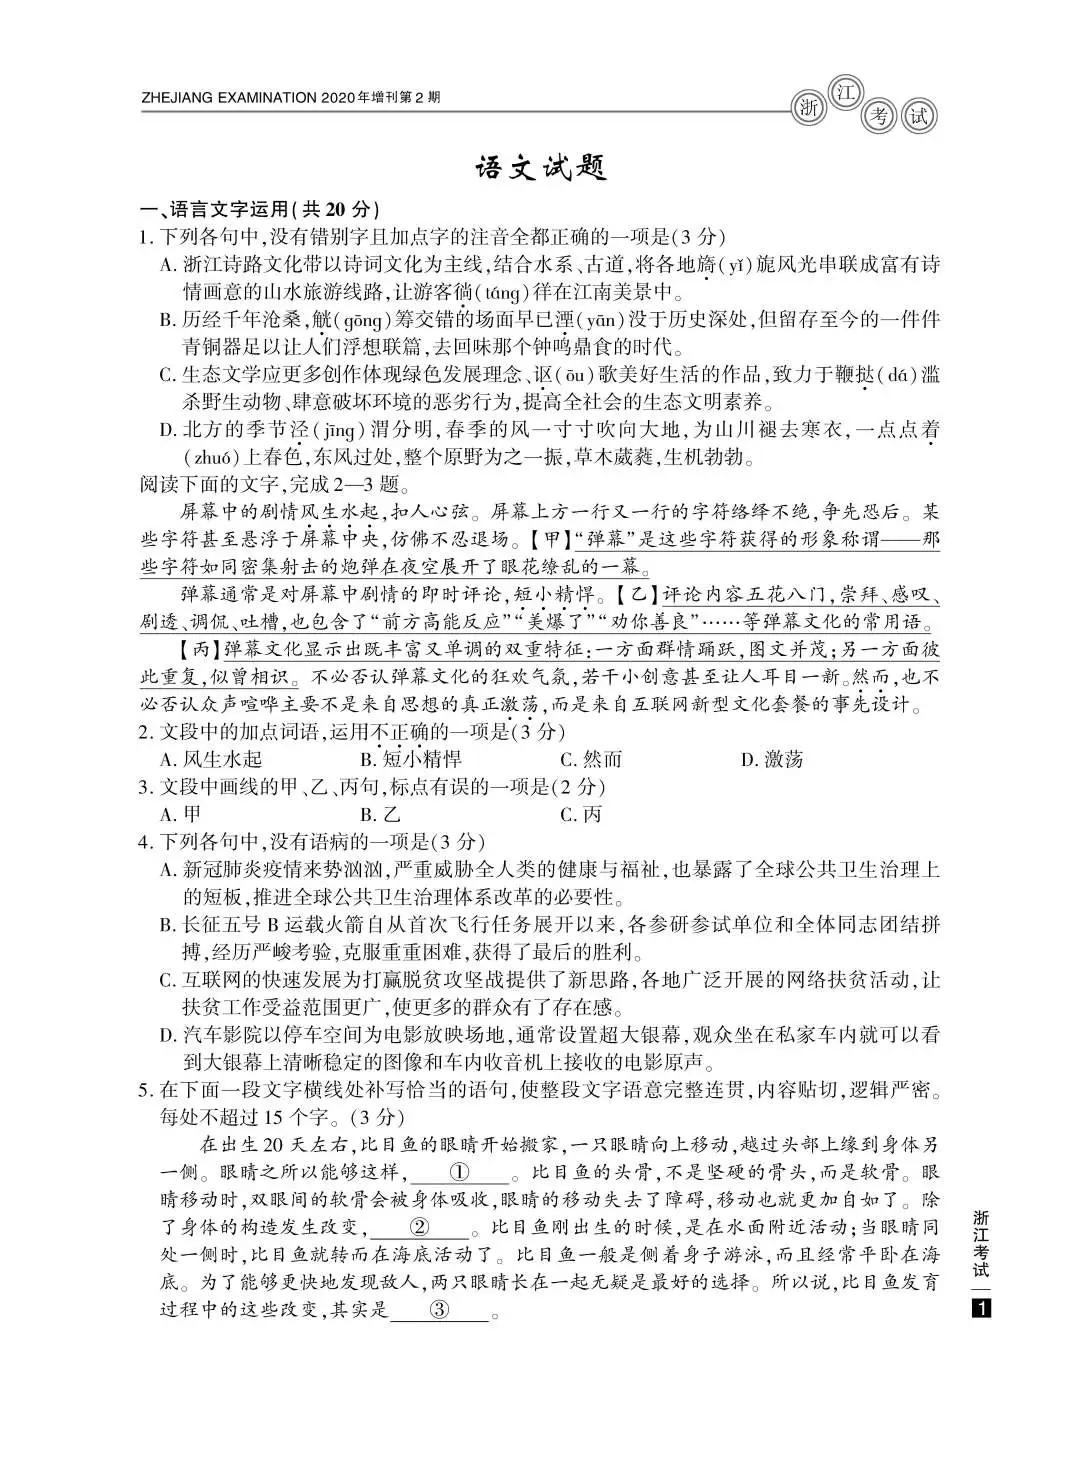 2020浙江高考语文真题及答案公布 —查字典高考网1